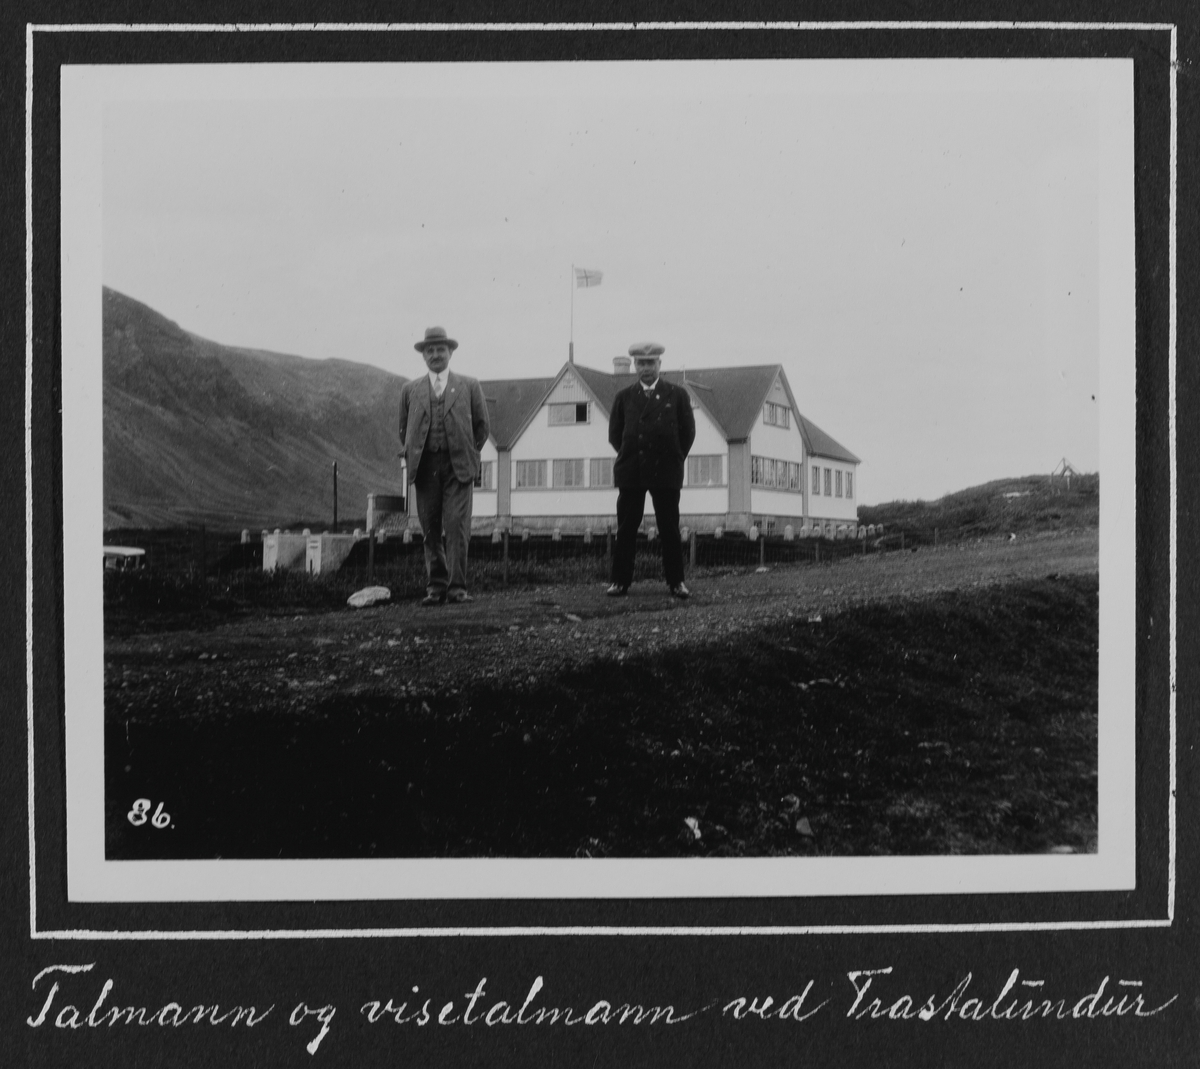 Fra 1000 årsfesten for Alltinget på Island i 1930. Talmann visetalmann Trastalundur.